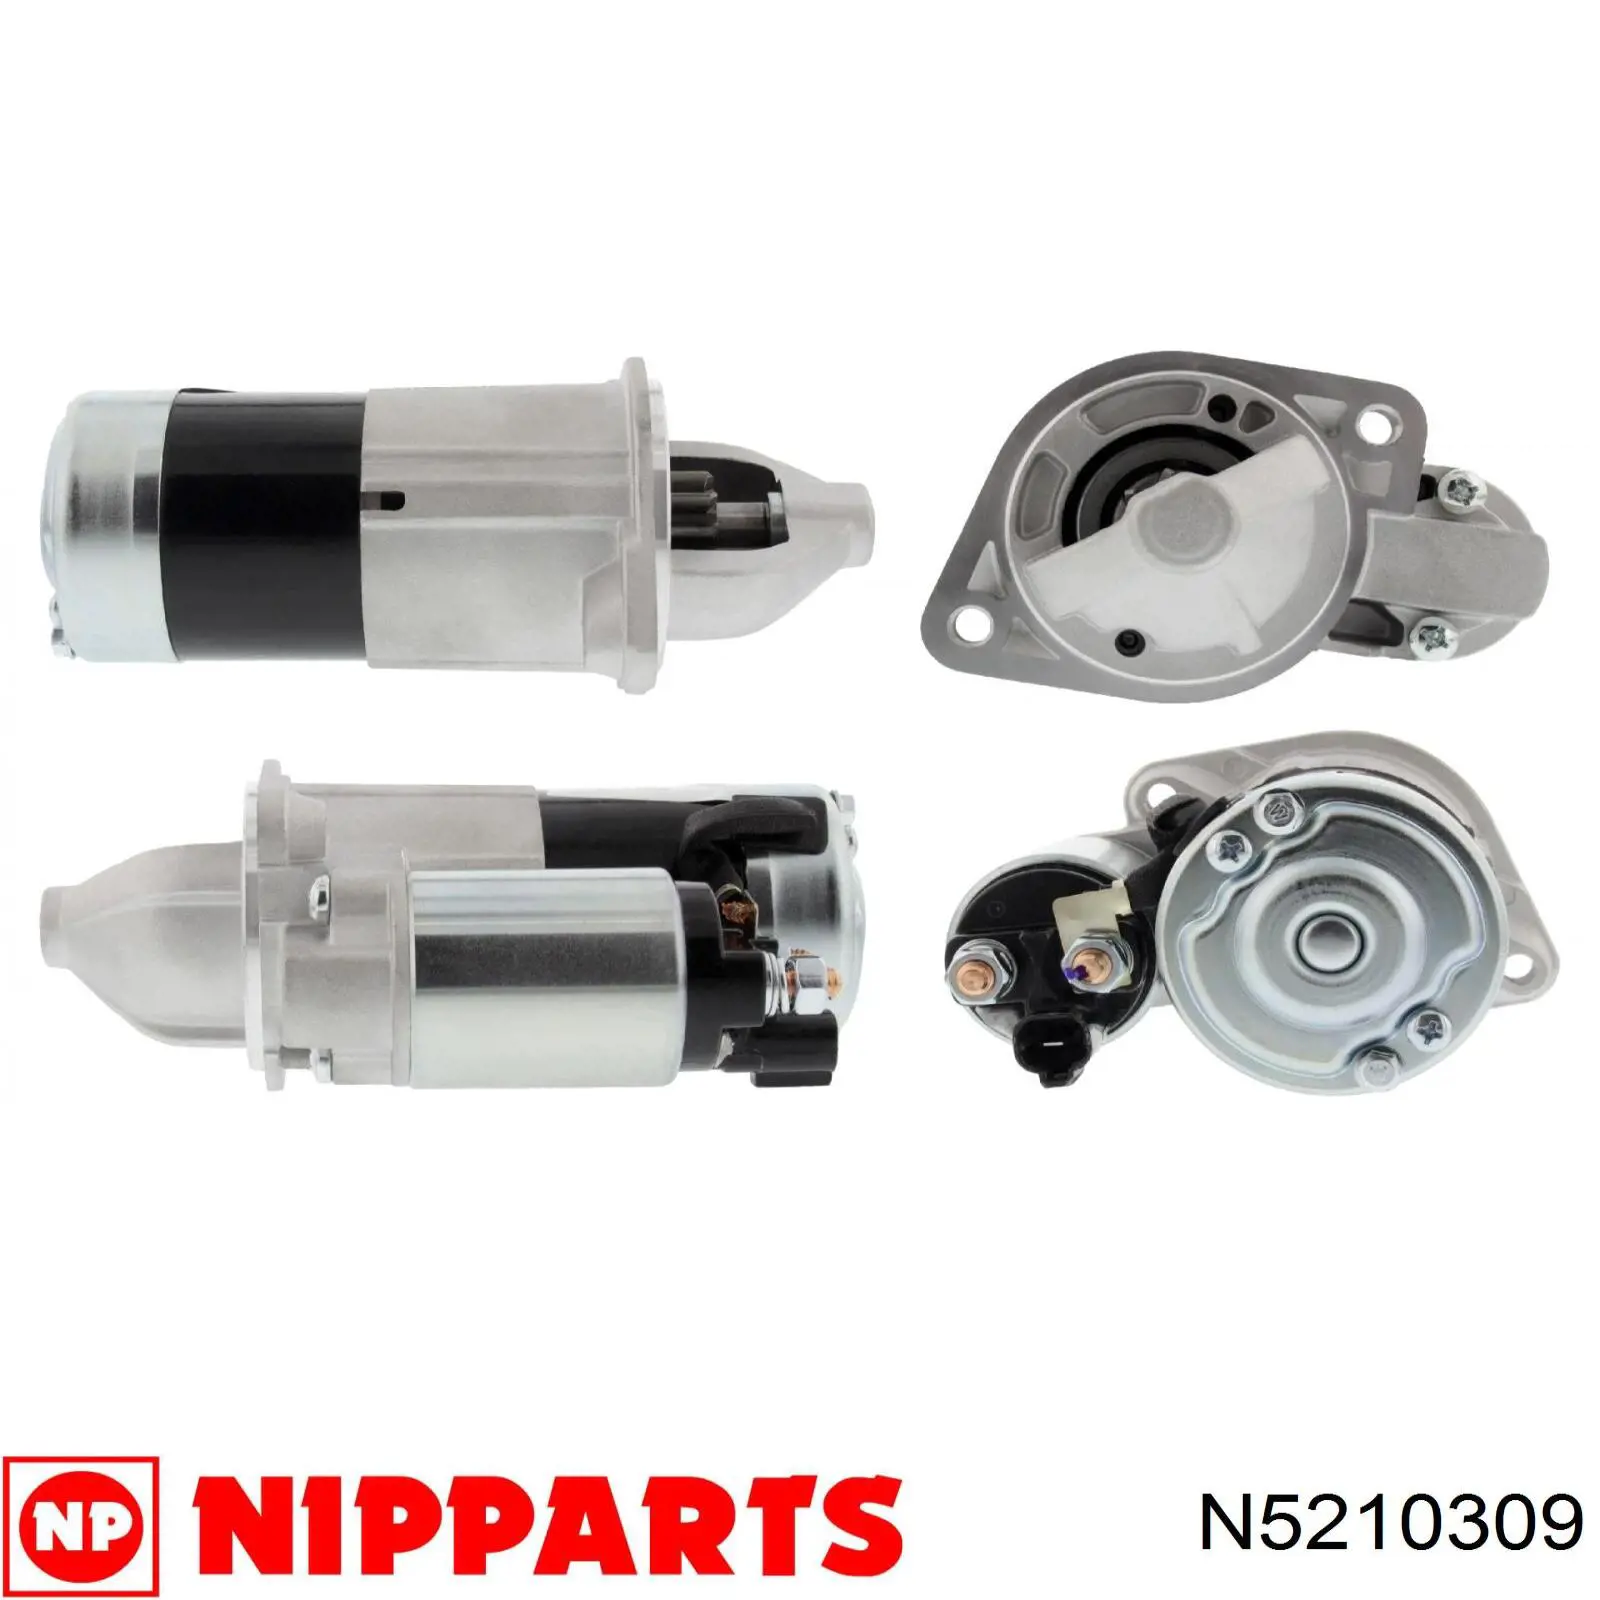 N5210309 Nipparts motor de arranque